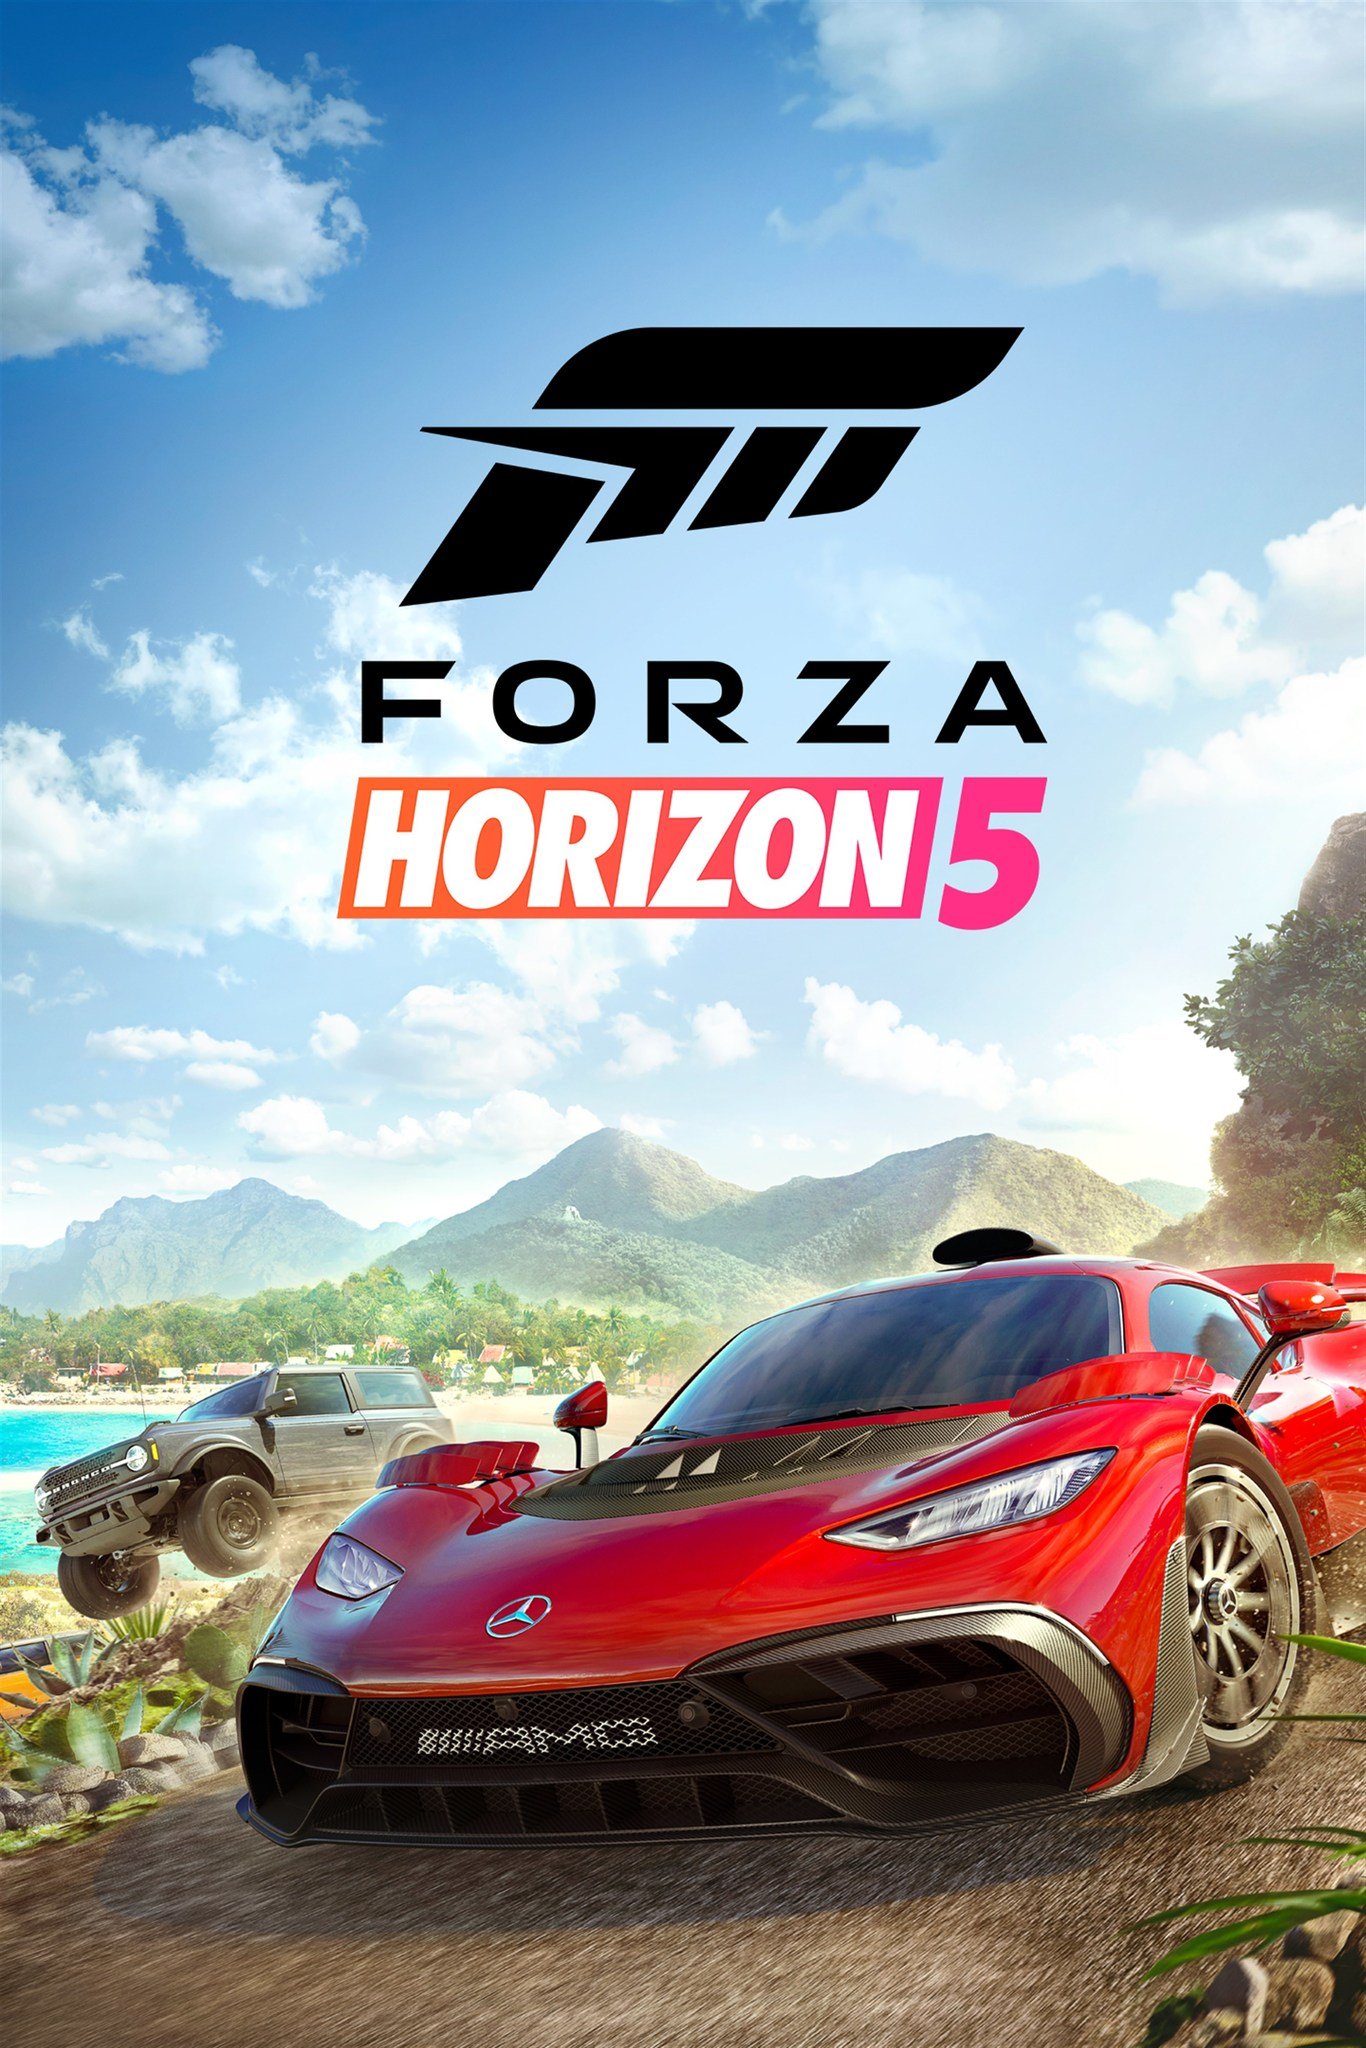 Reco-imagem do Forza Horizon 5